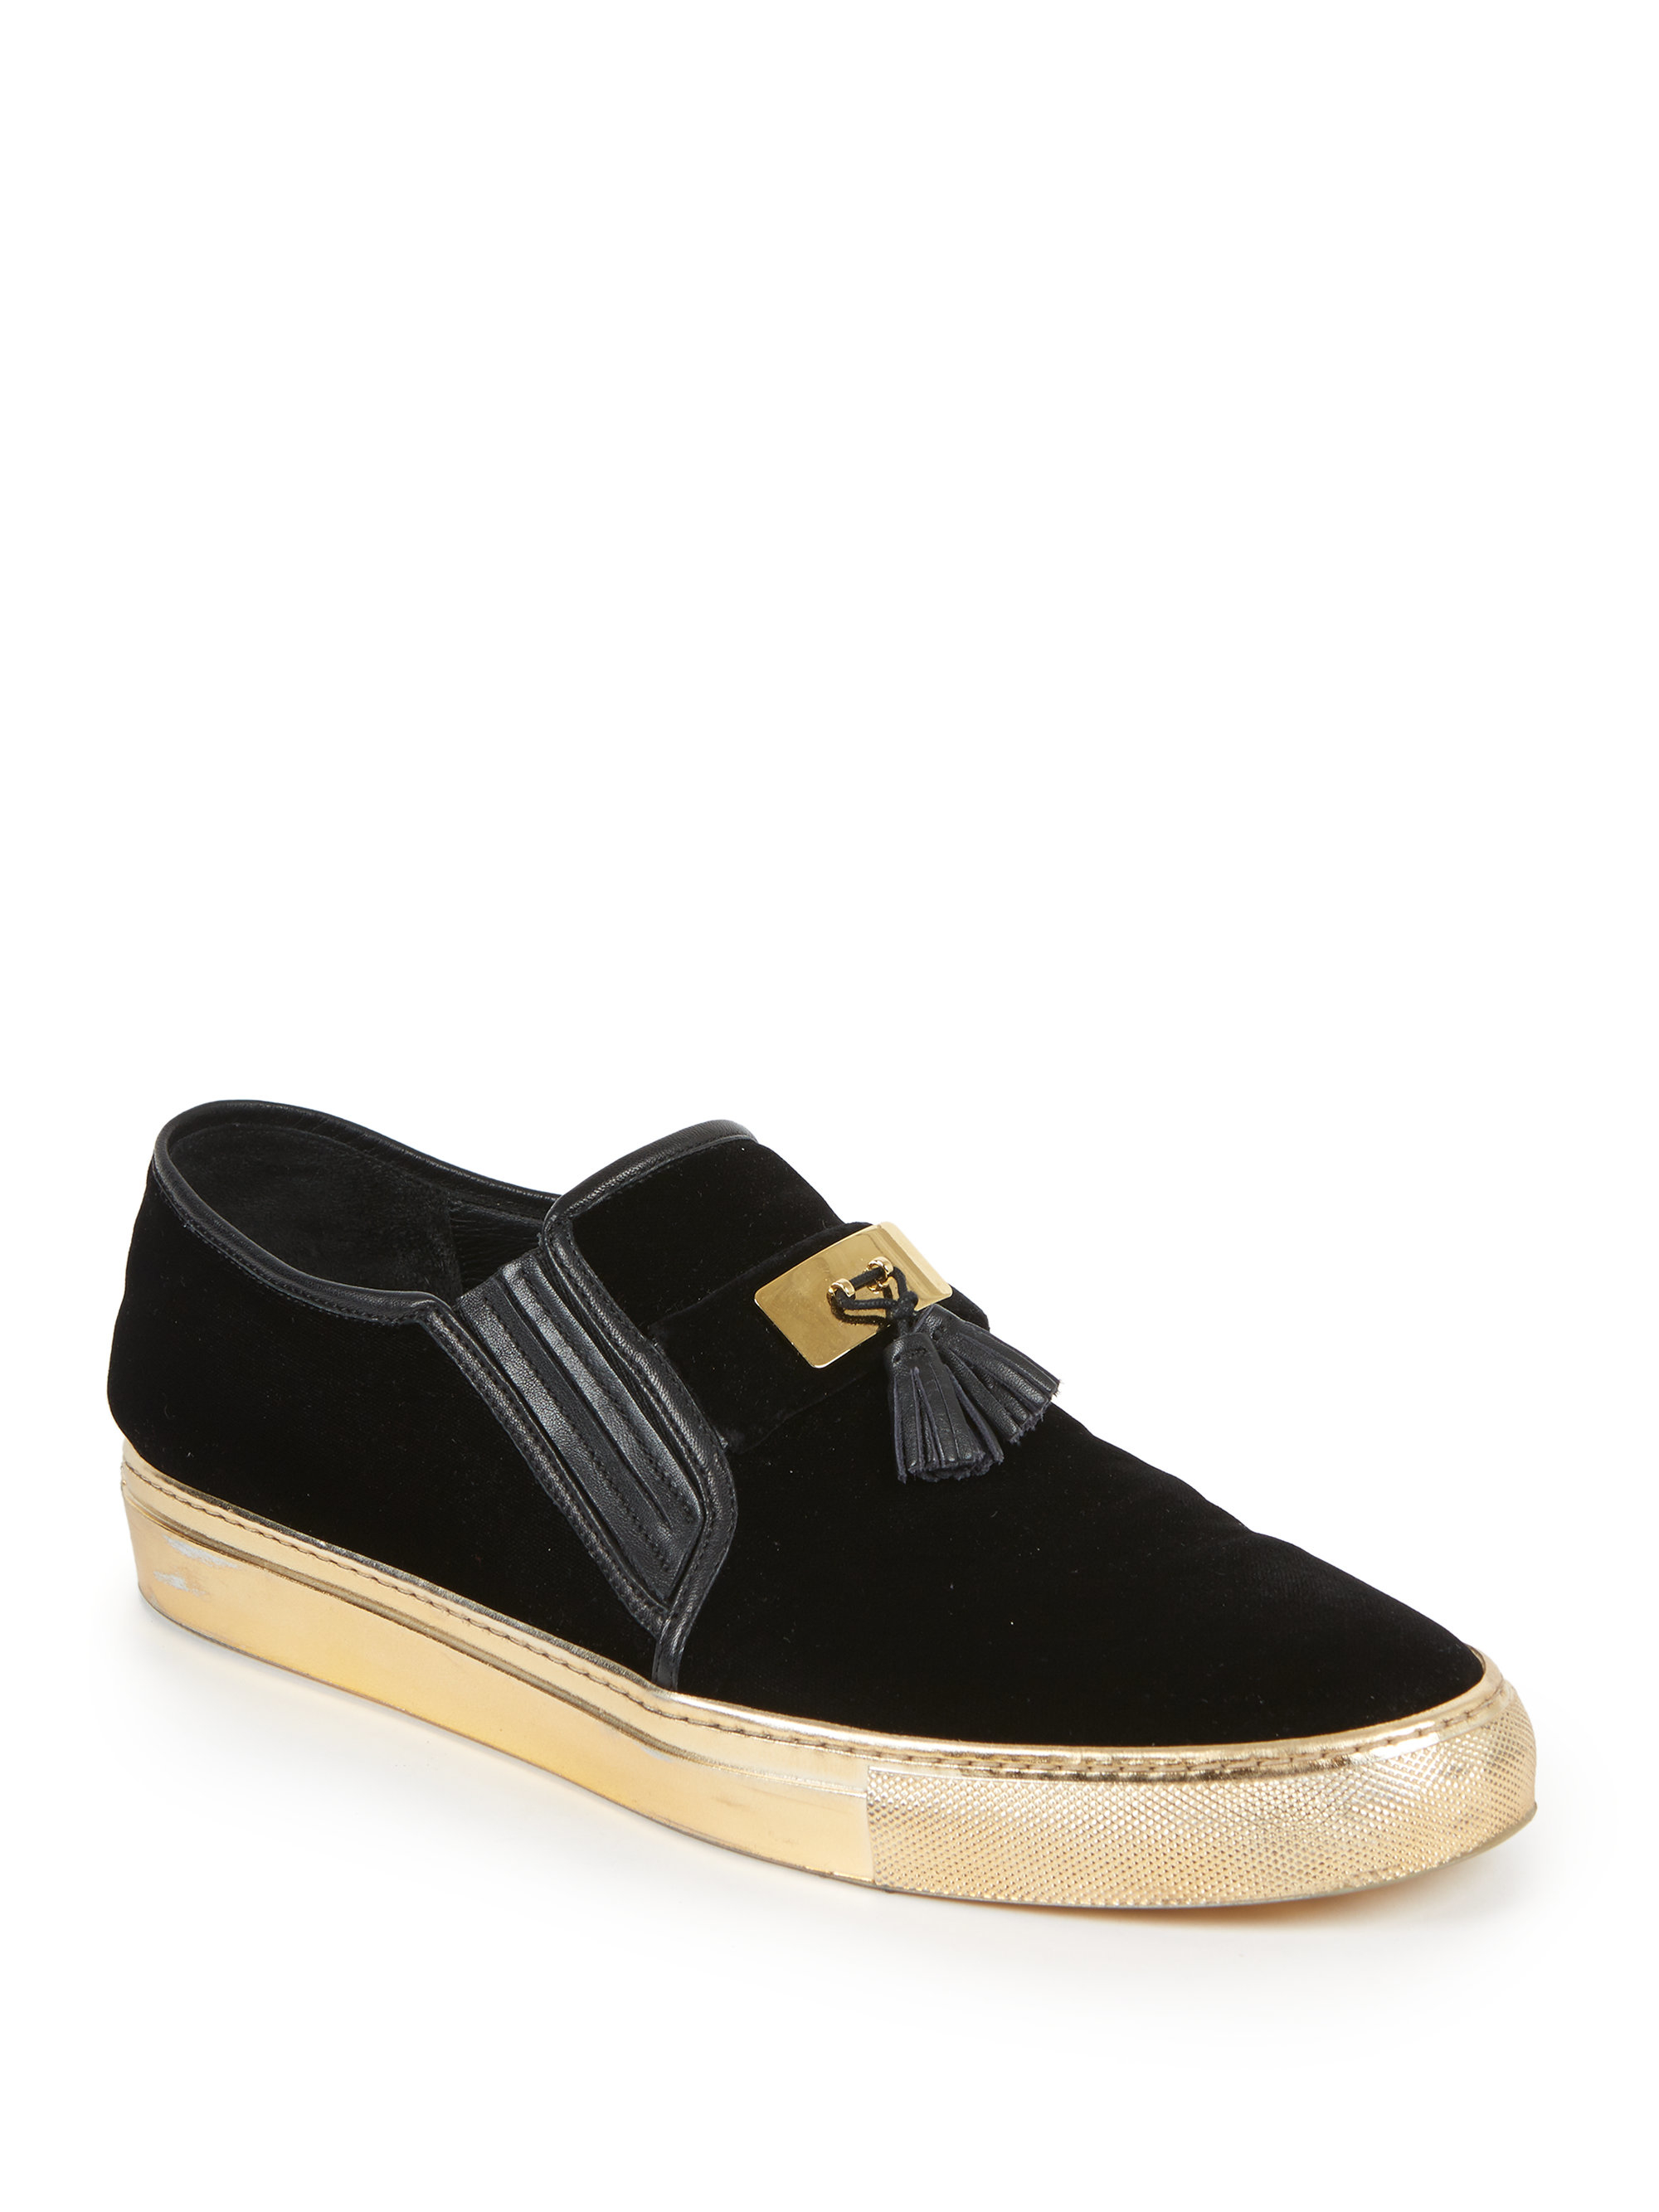 Balmain Tasseled Velvet Slip-on Sneakers in Black-Gold (Black) for Men -  Lyst